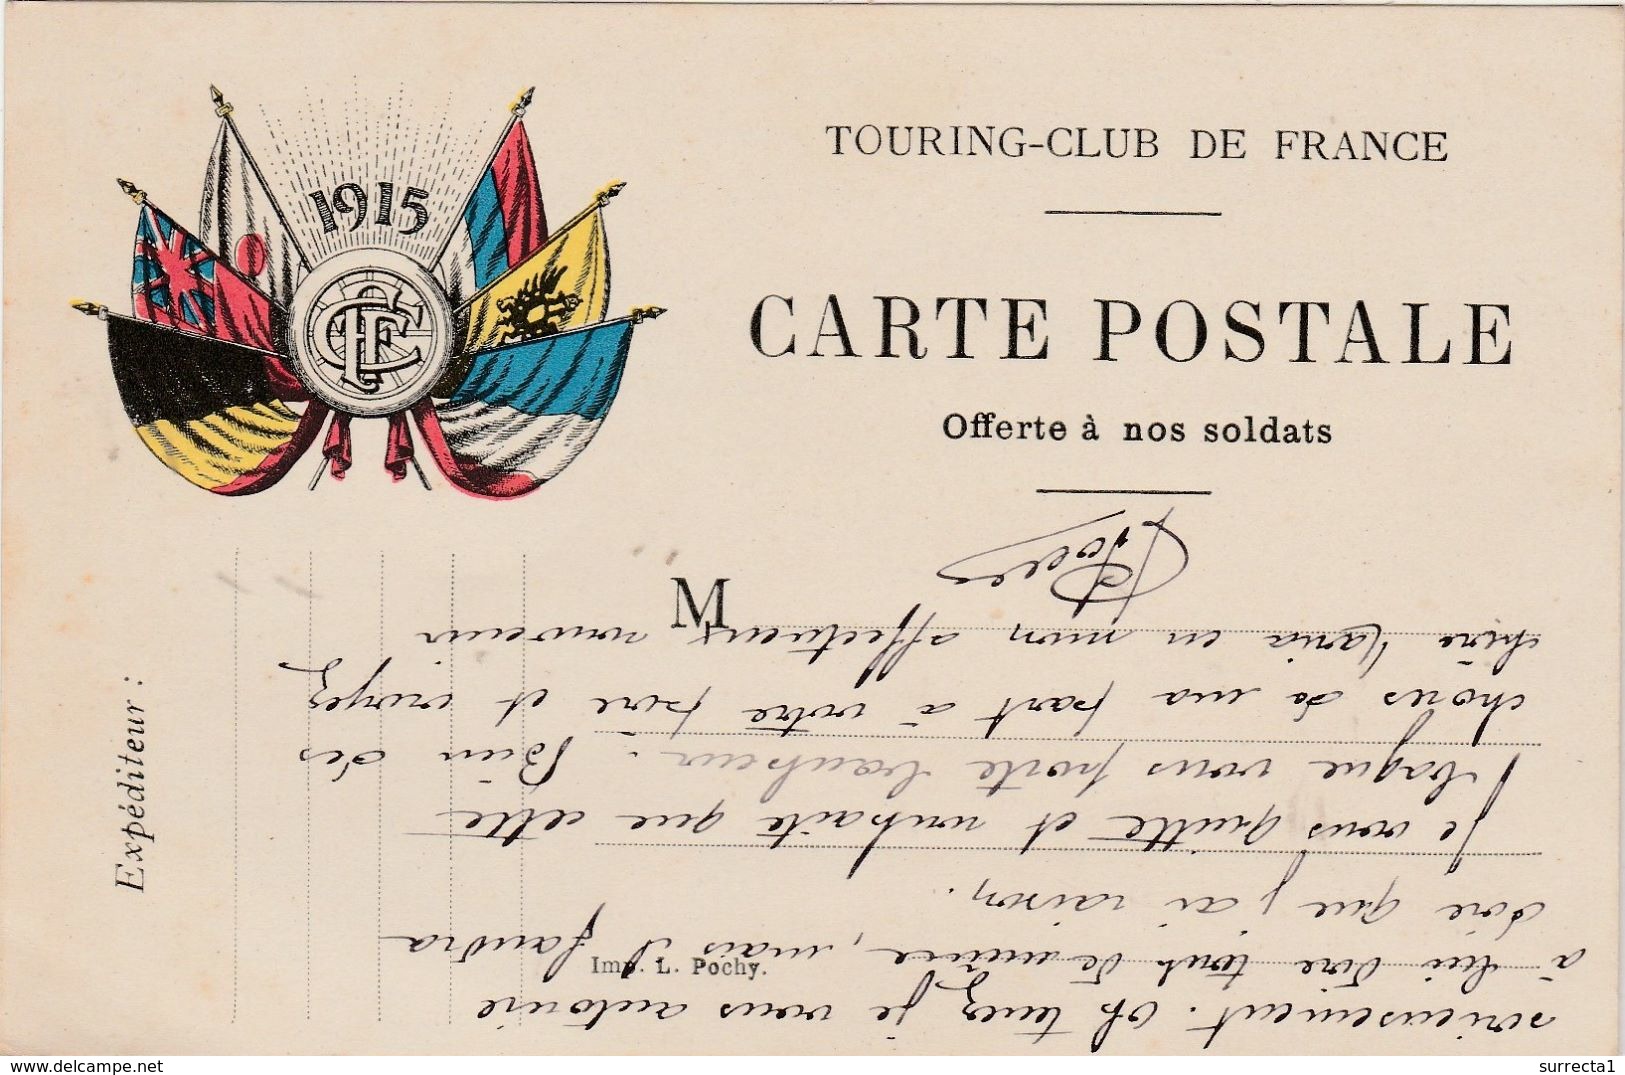 Carte Postale Offerte Aux Soldats / 1915 / Touring Club France - 1914-18